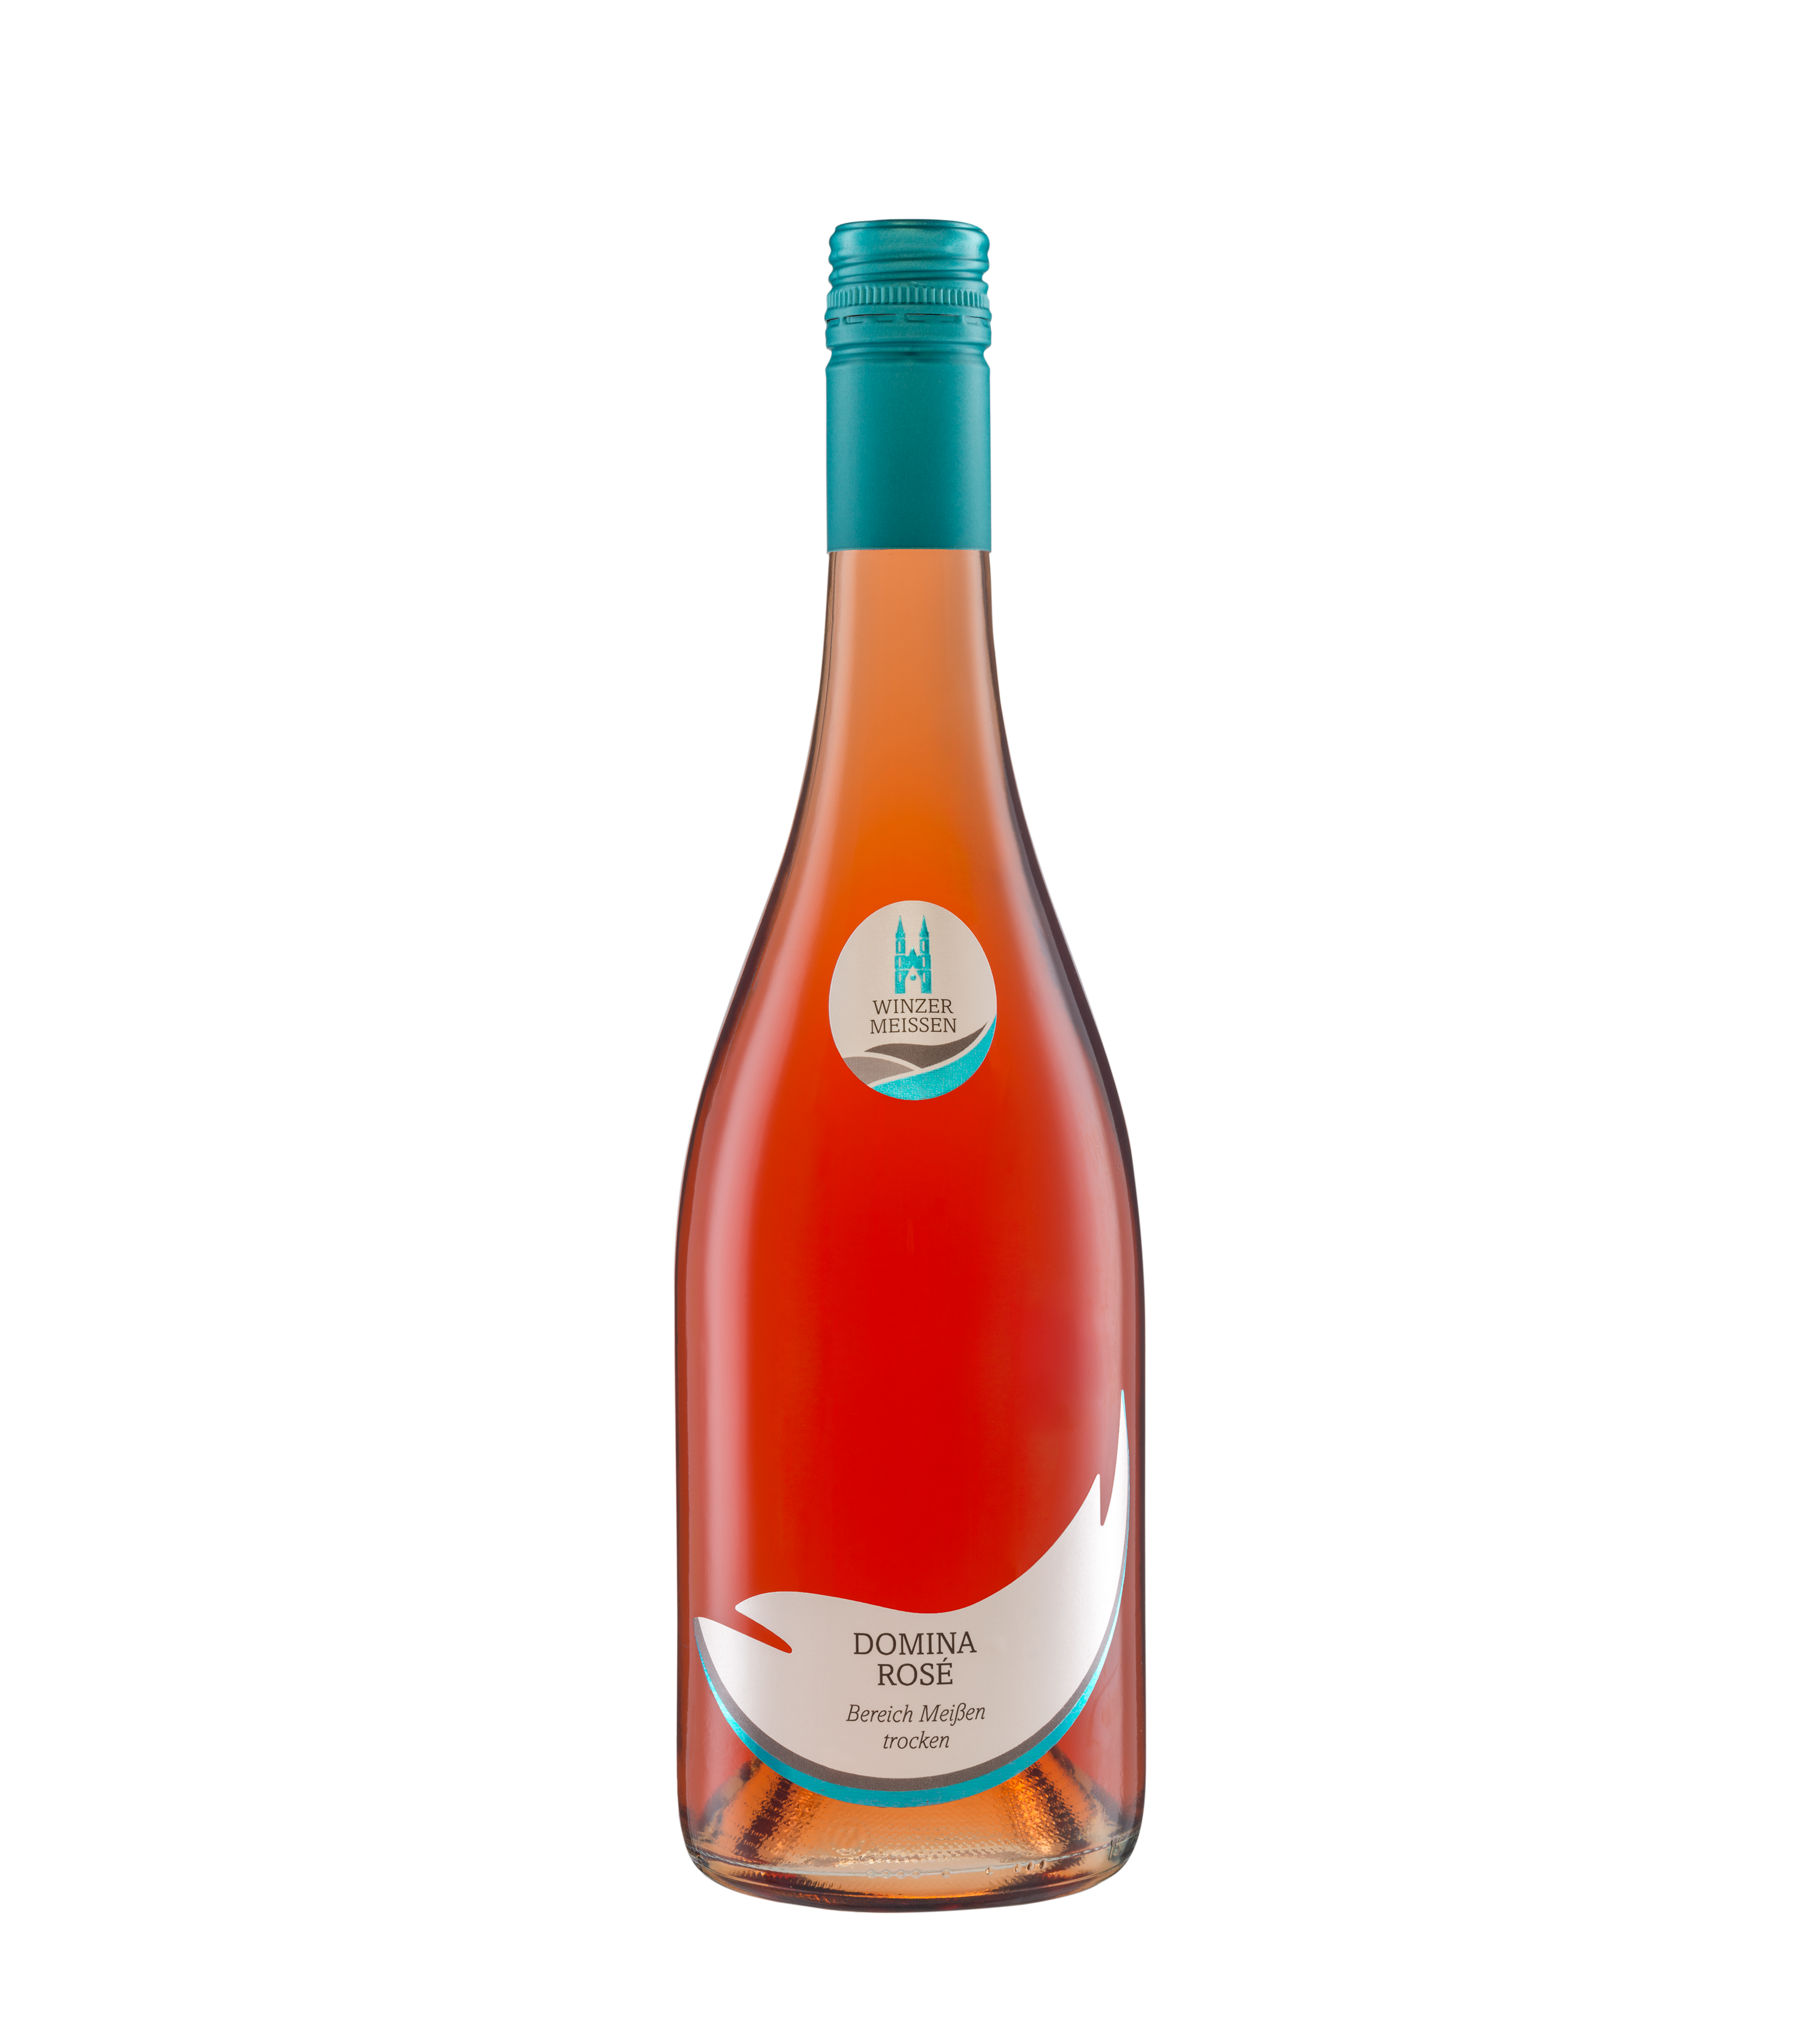 2021 Domina Rosé Qualitätswein Bereich Meißen trocken